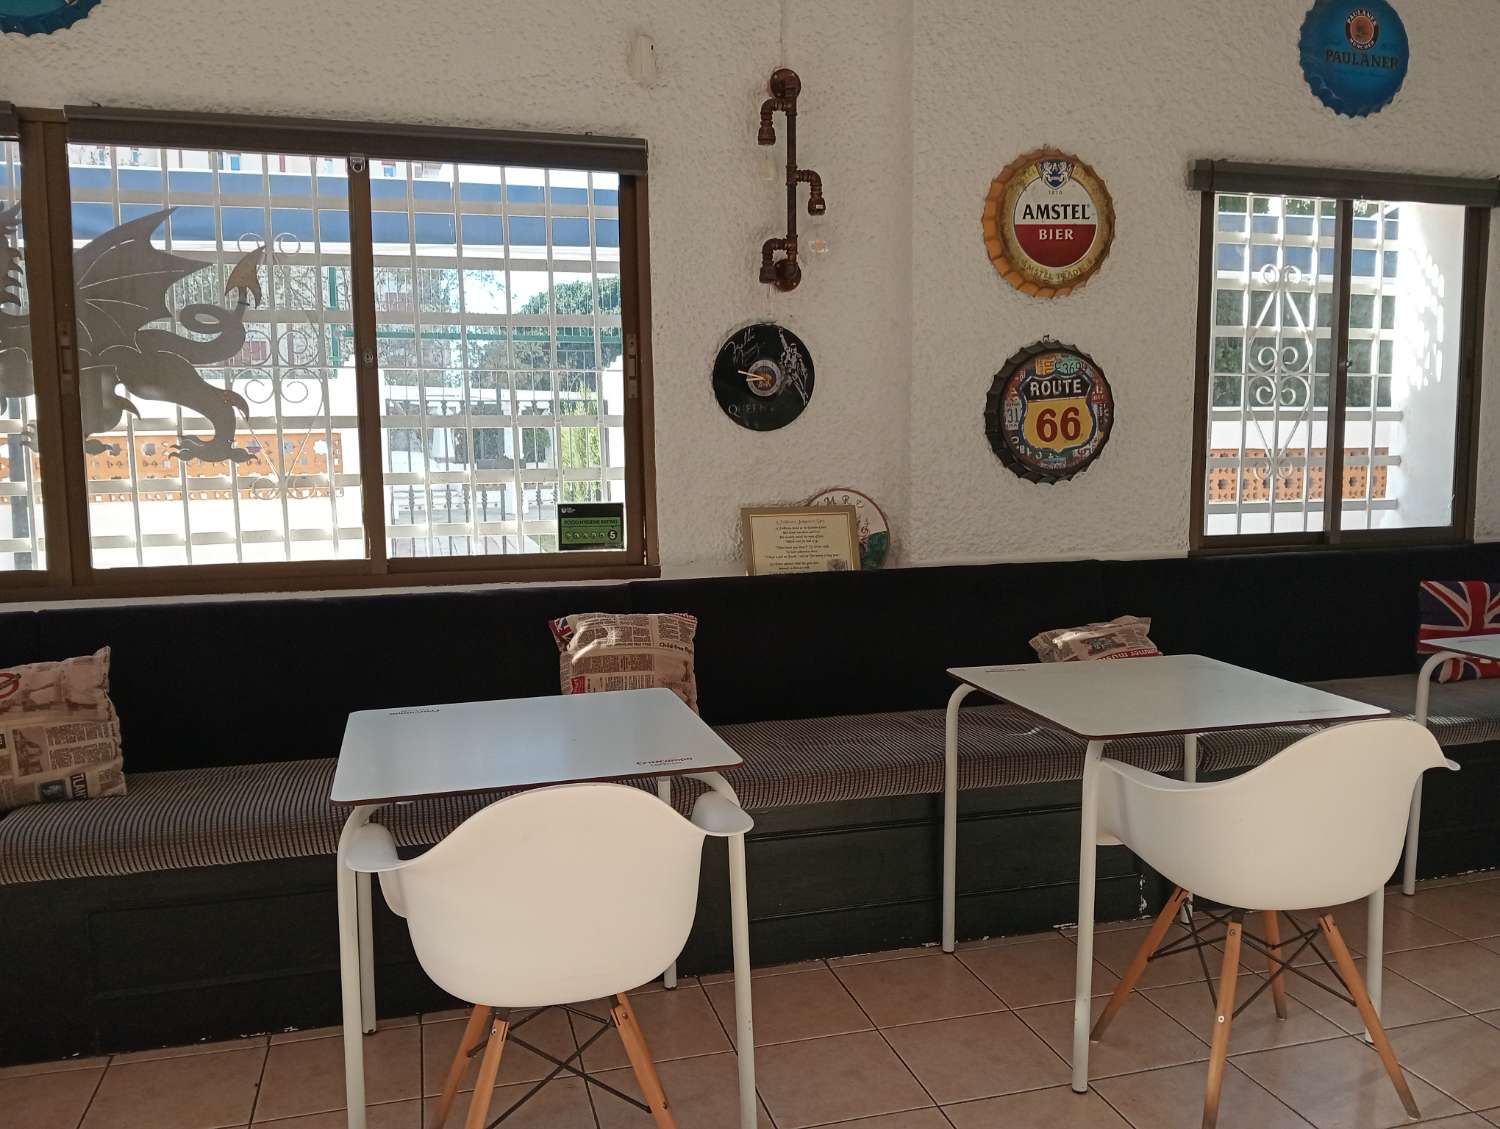 Cafeteria zue transfer in Arroyo de la Miel (Benalmádena)